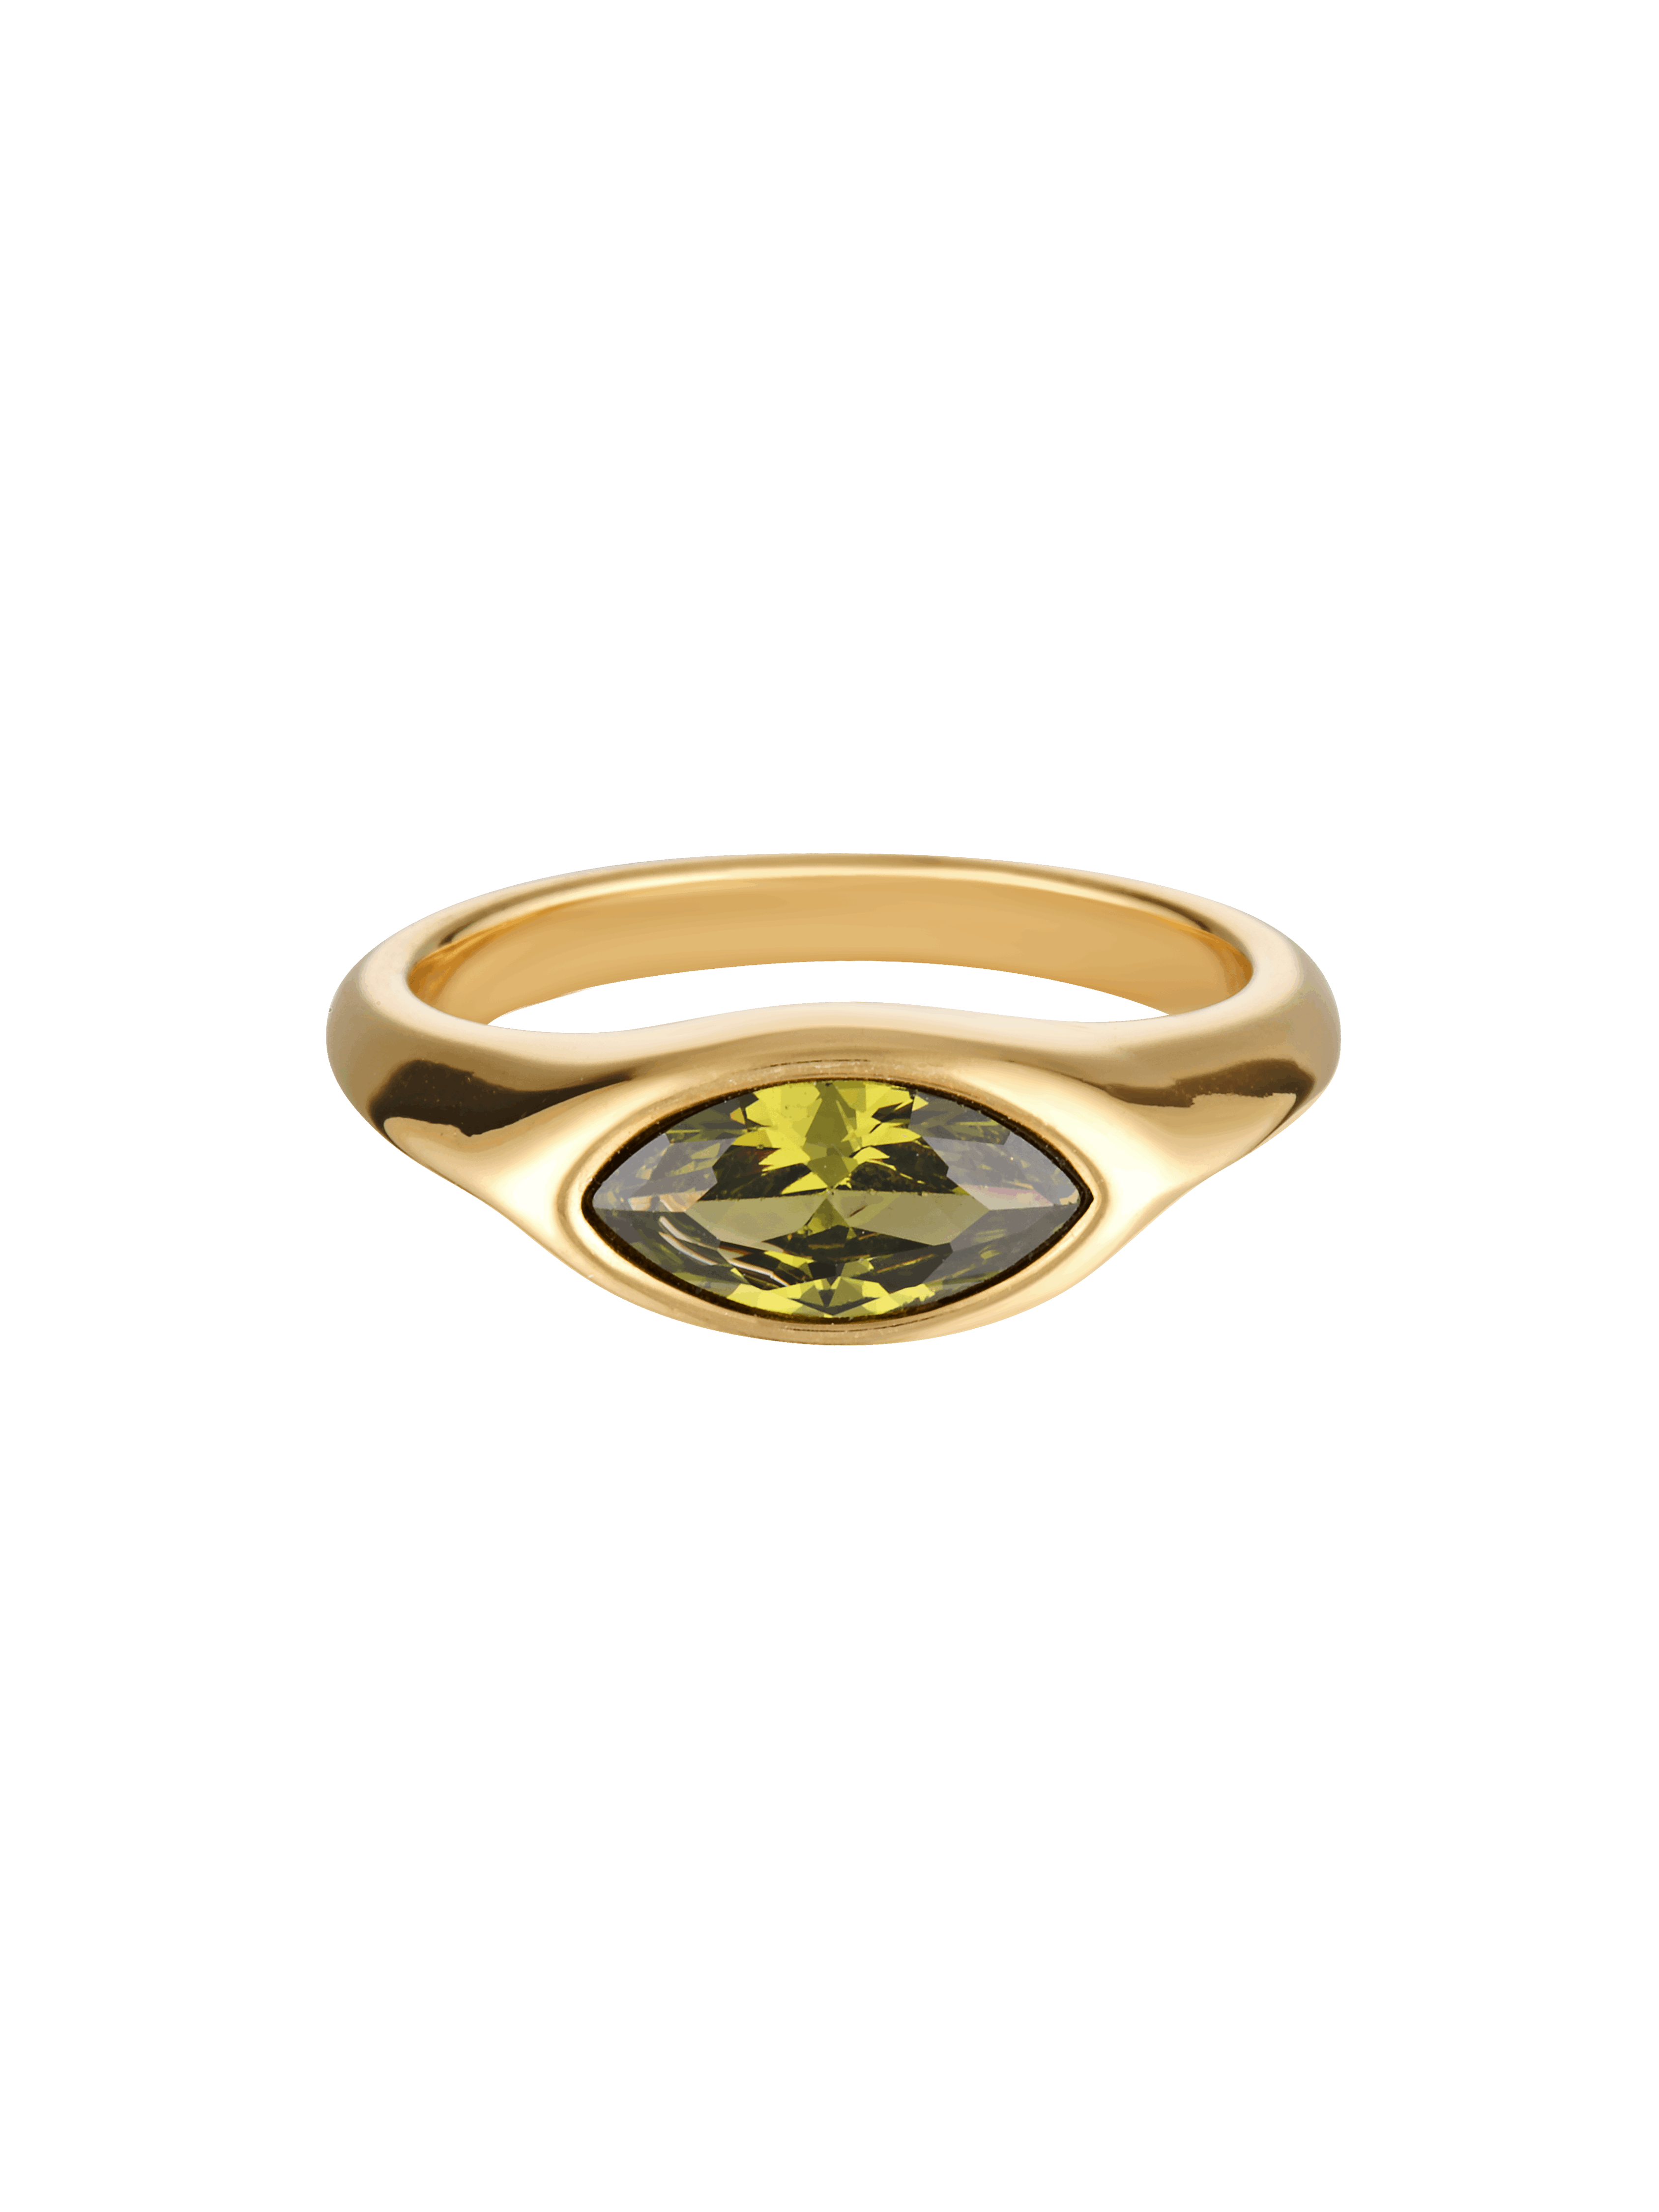 Green gemstone ring in gold